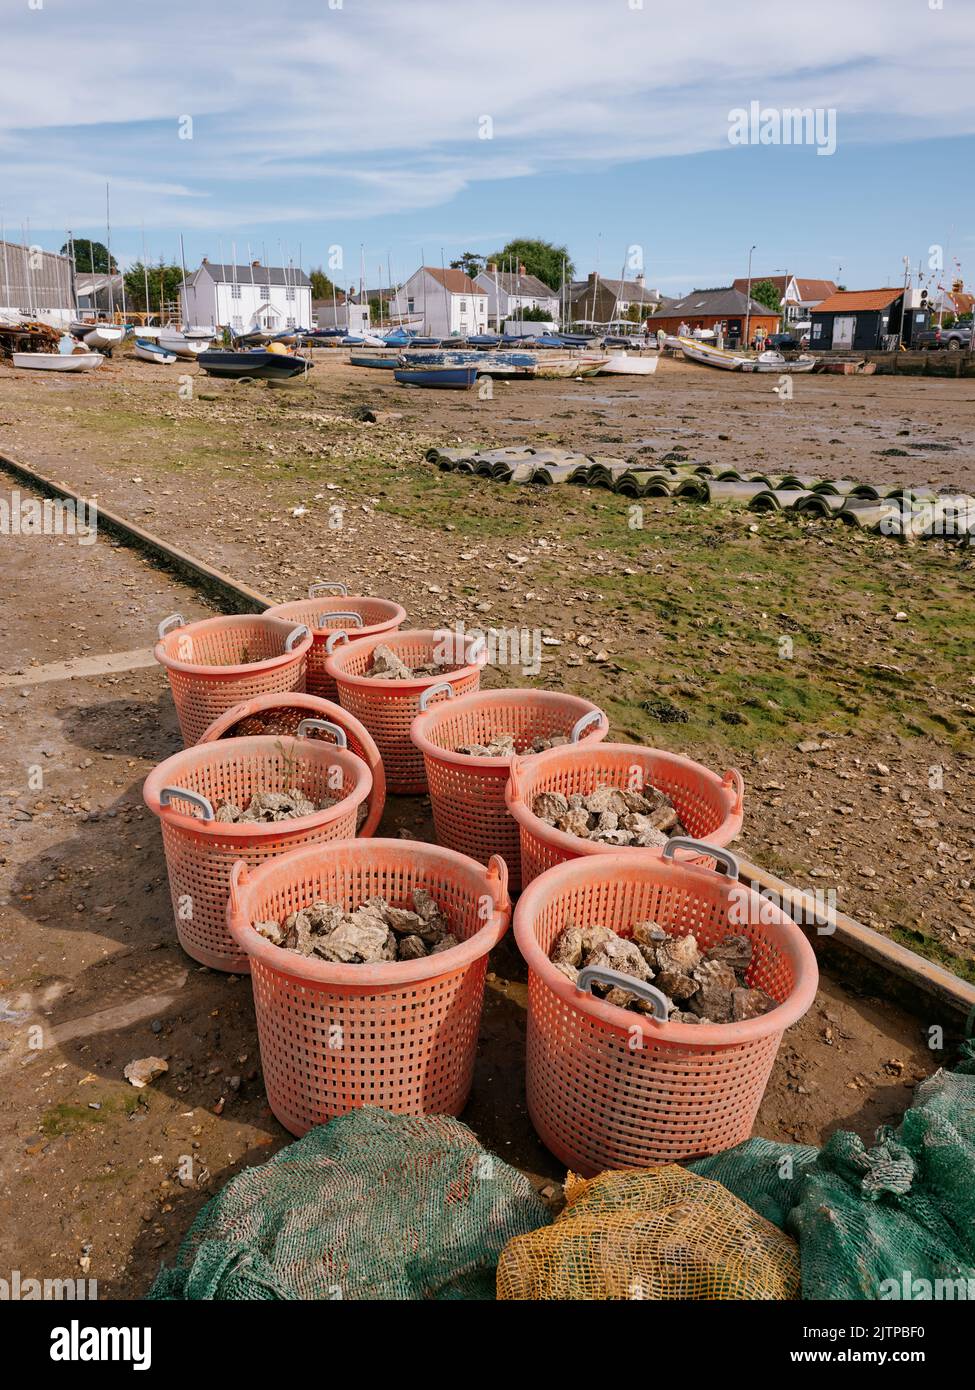 Frisch angelandete Austern in Plastikbehältern am Ebbe-Vorland im West Mersea Harbour, Mersea Island, Essex England - lokale Produkte Meeresfrüchte Stockfoto